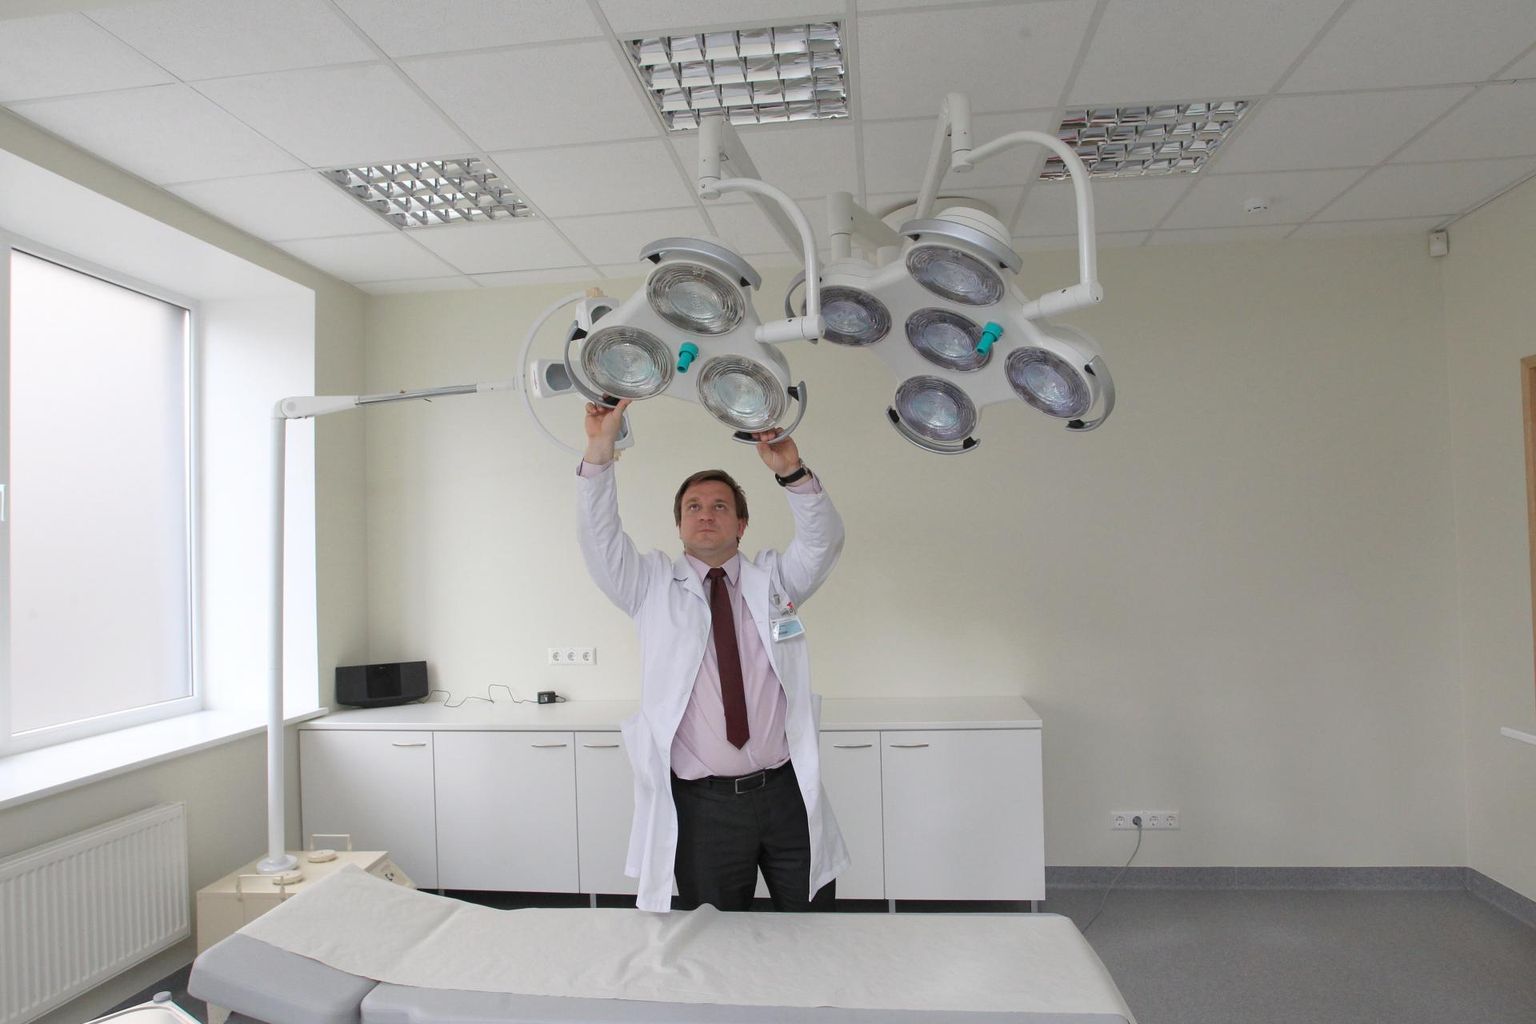 Pildil sätib Kristo Ausmees oma laienenud Medita kliiniku protseduuriruumis lampi.